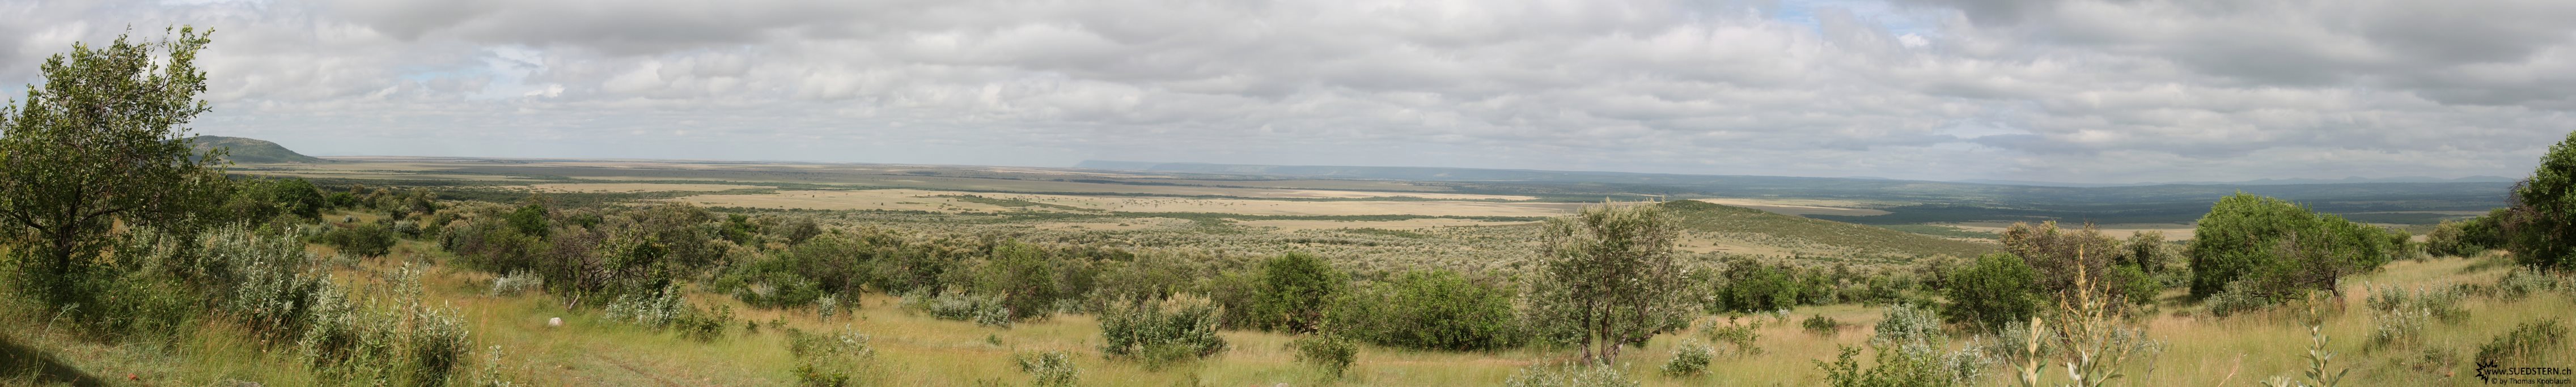 2007-04-14 - Kenya - Massai Mara from Hill Panorama